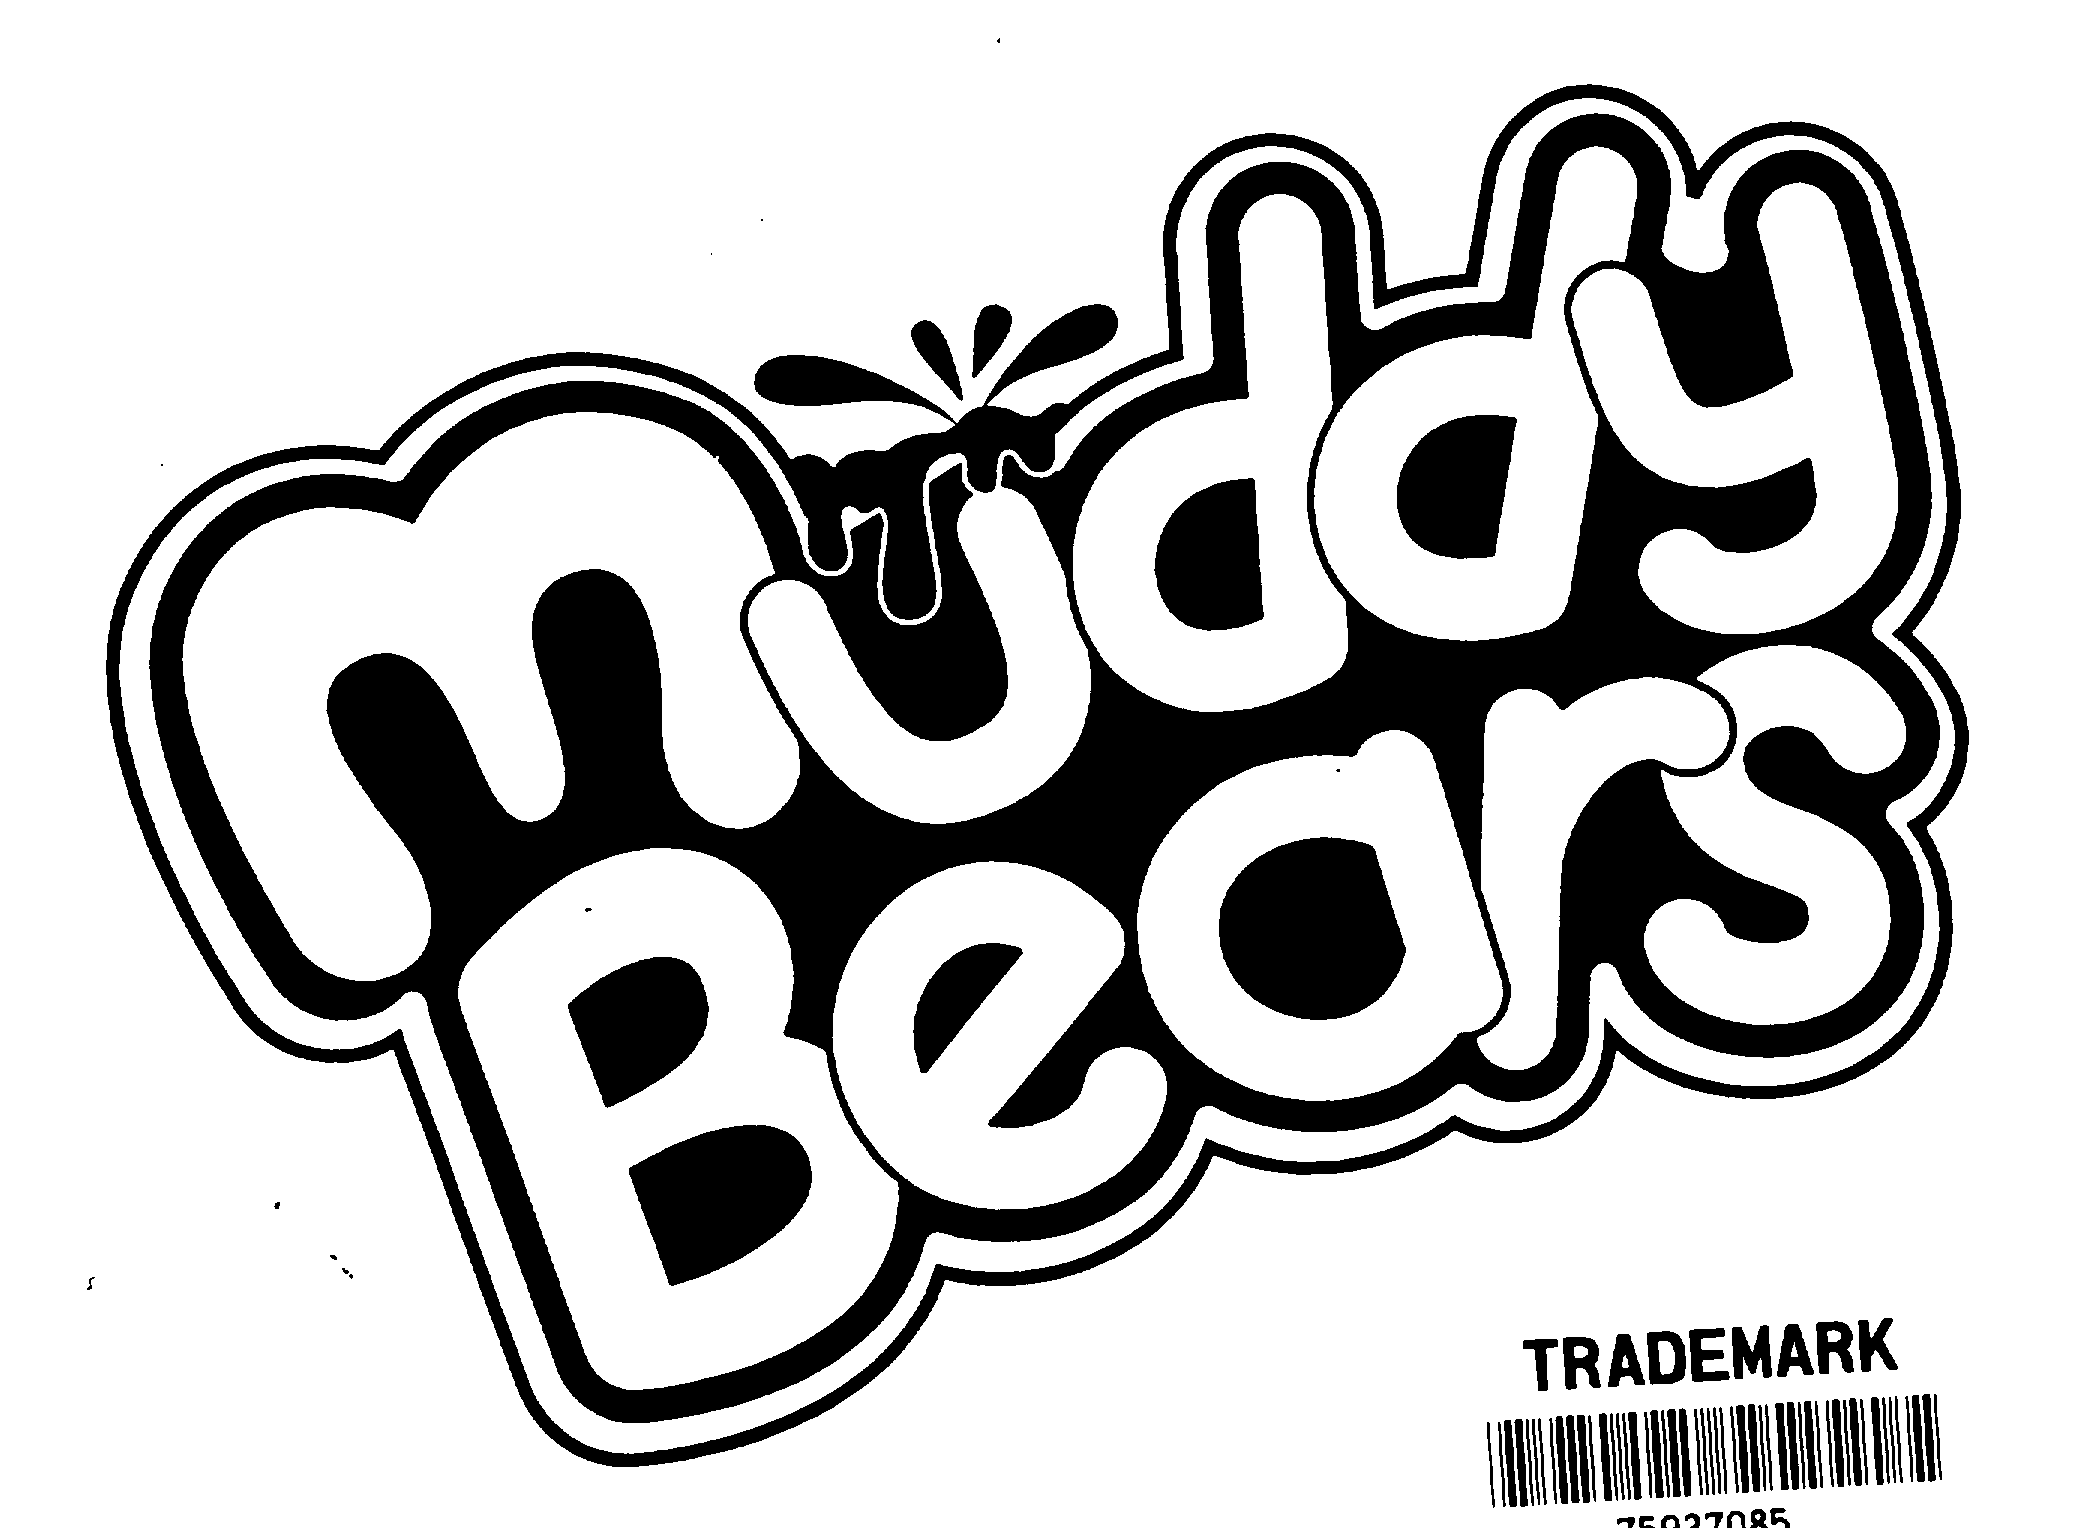  MUDDY BEARS